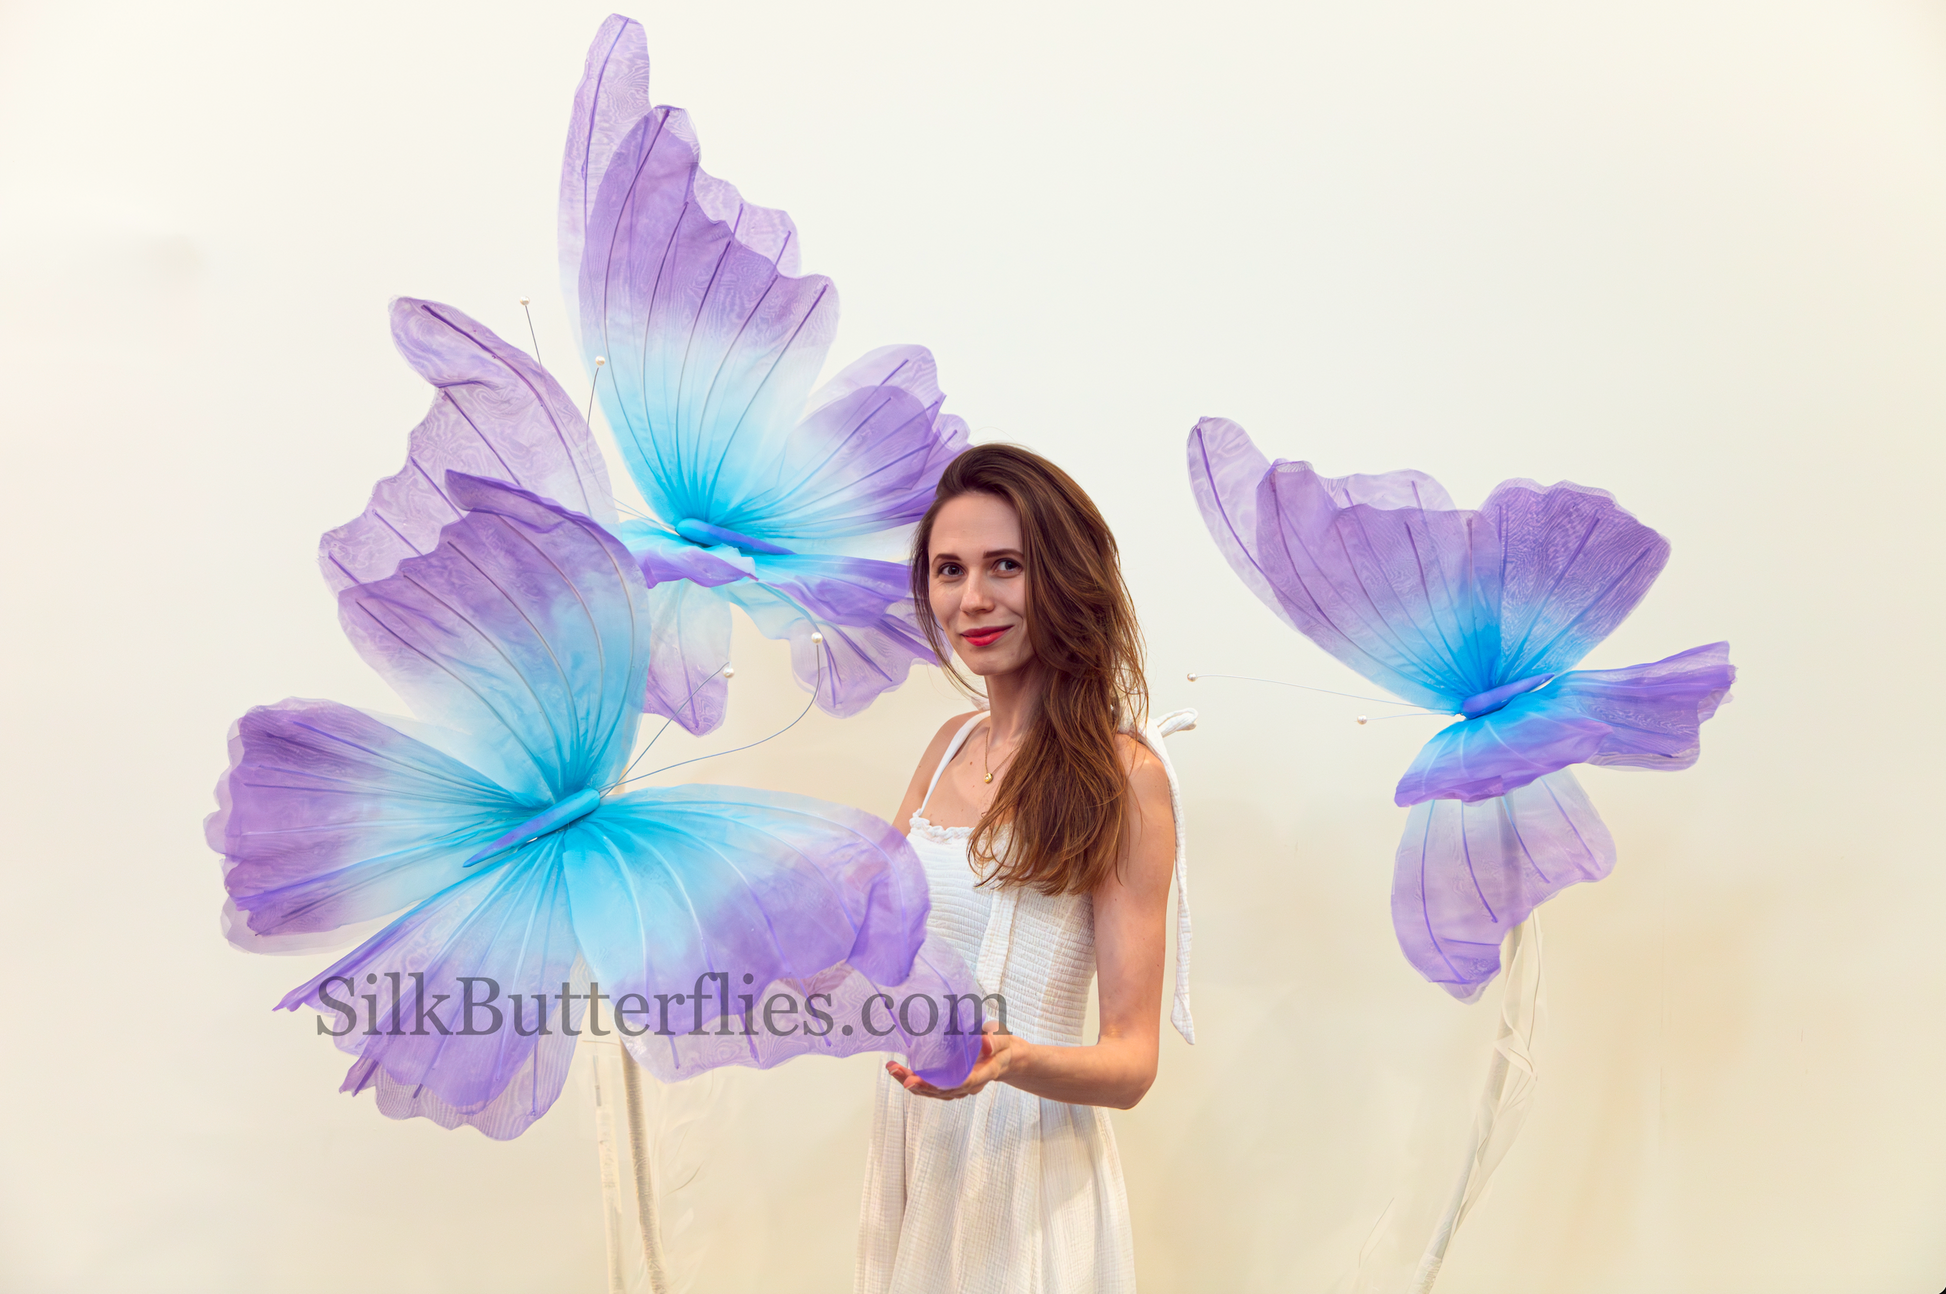 Silk Butterflies decor for Balloon artists